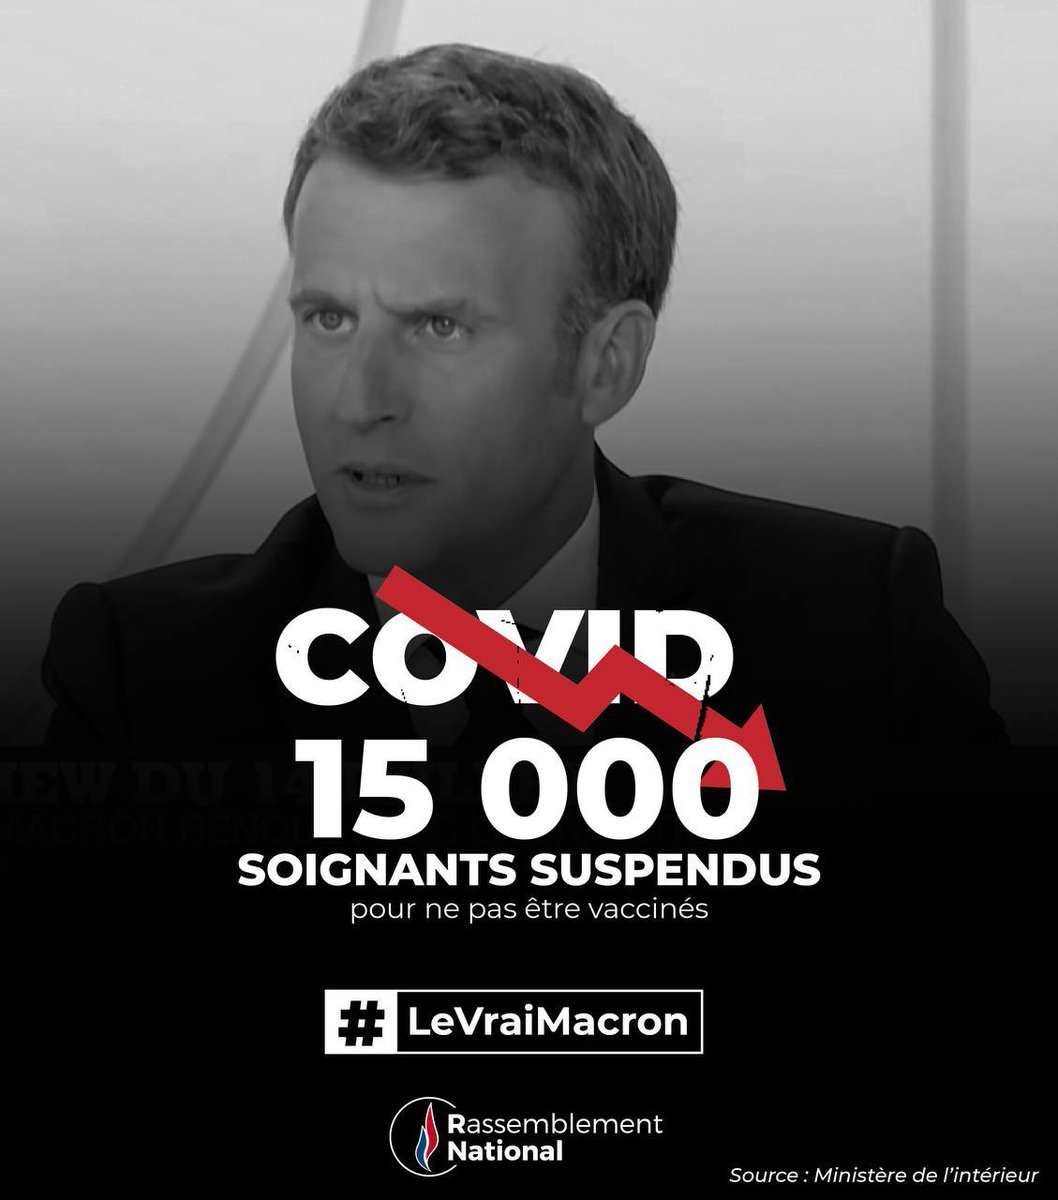 Nos #Soignants ont payés le prix de la #Covid_19.
Considérés en héros, applaudis chaque soir puis suspendus.

Voilà #LeVraiMacron, #LeVraiBilan ! 

#macron20h 
#soignantssuspendus